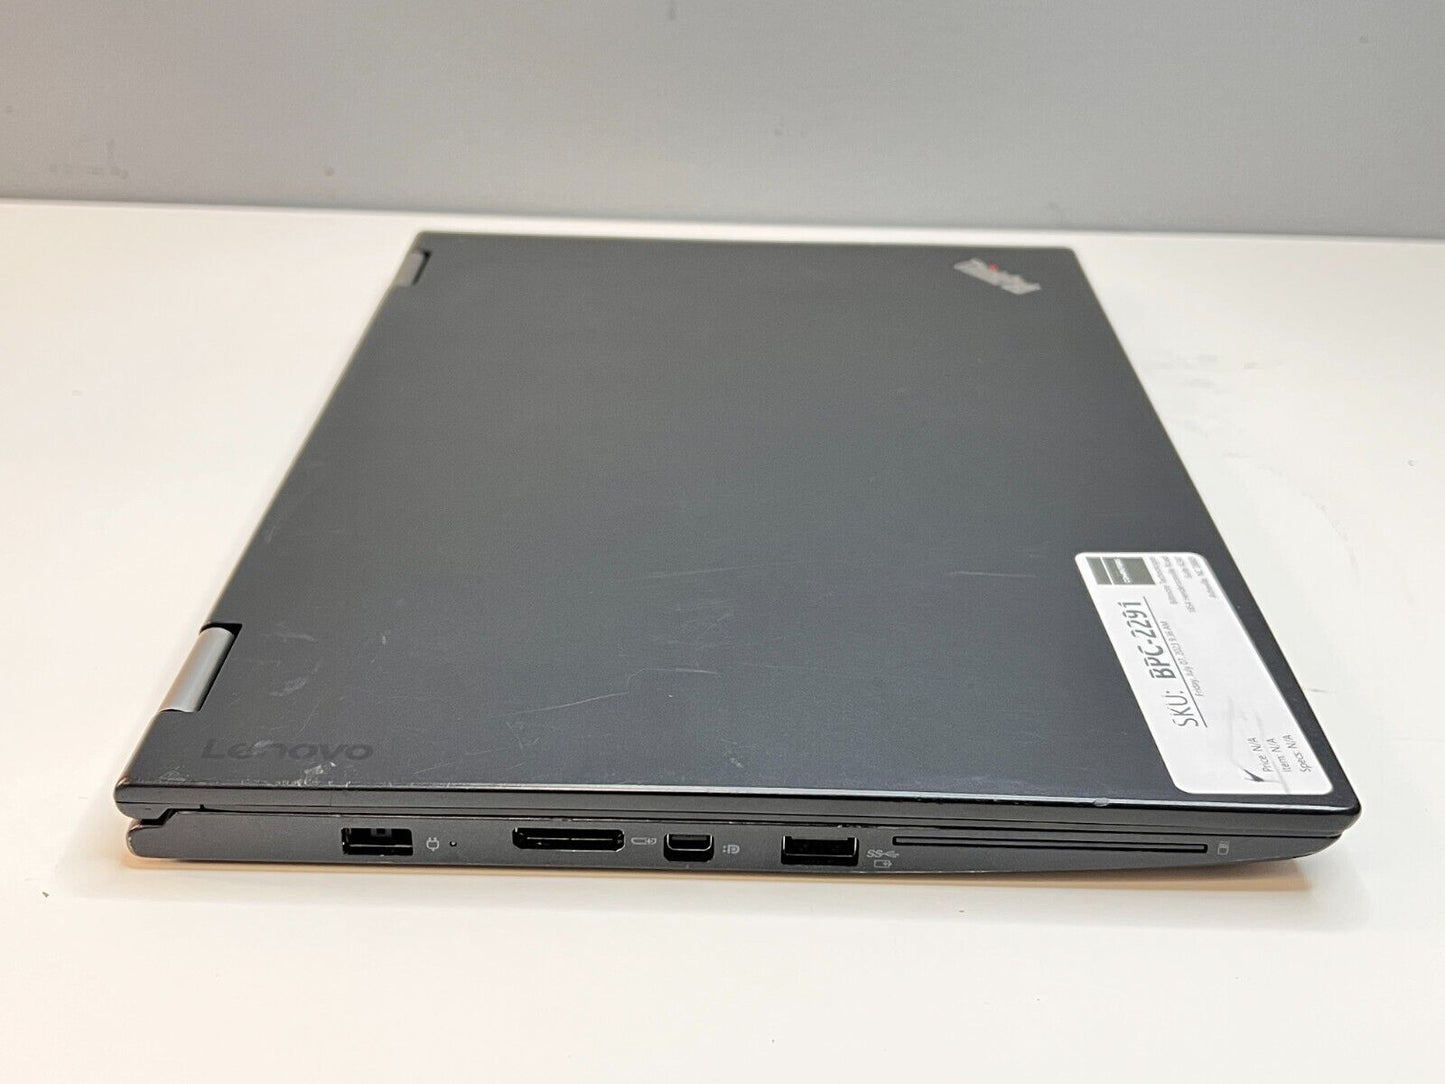 2in1 Lenovo Yoga X260 (i5-6200U, 8GB, 192GB NVMe M.2 SSD) w/ W10 Pro & 12" Touch